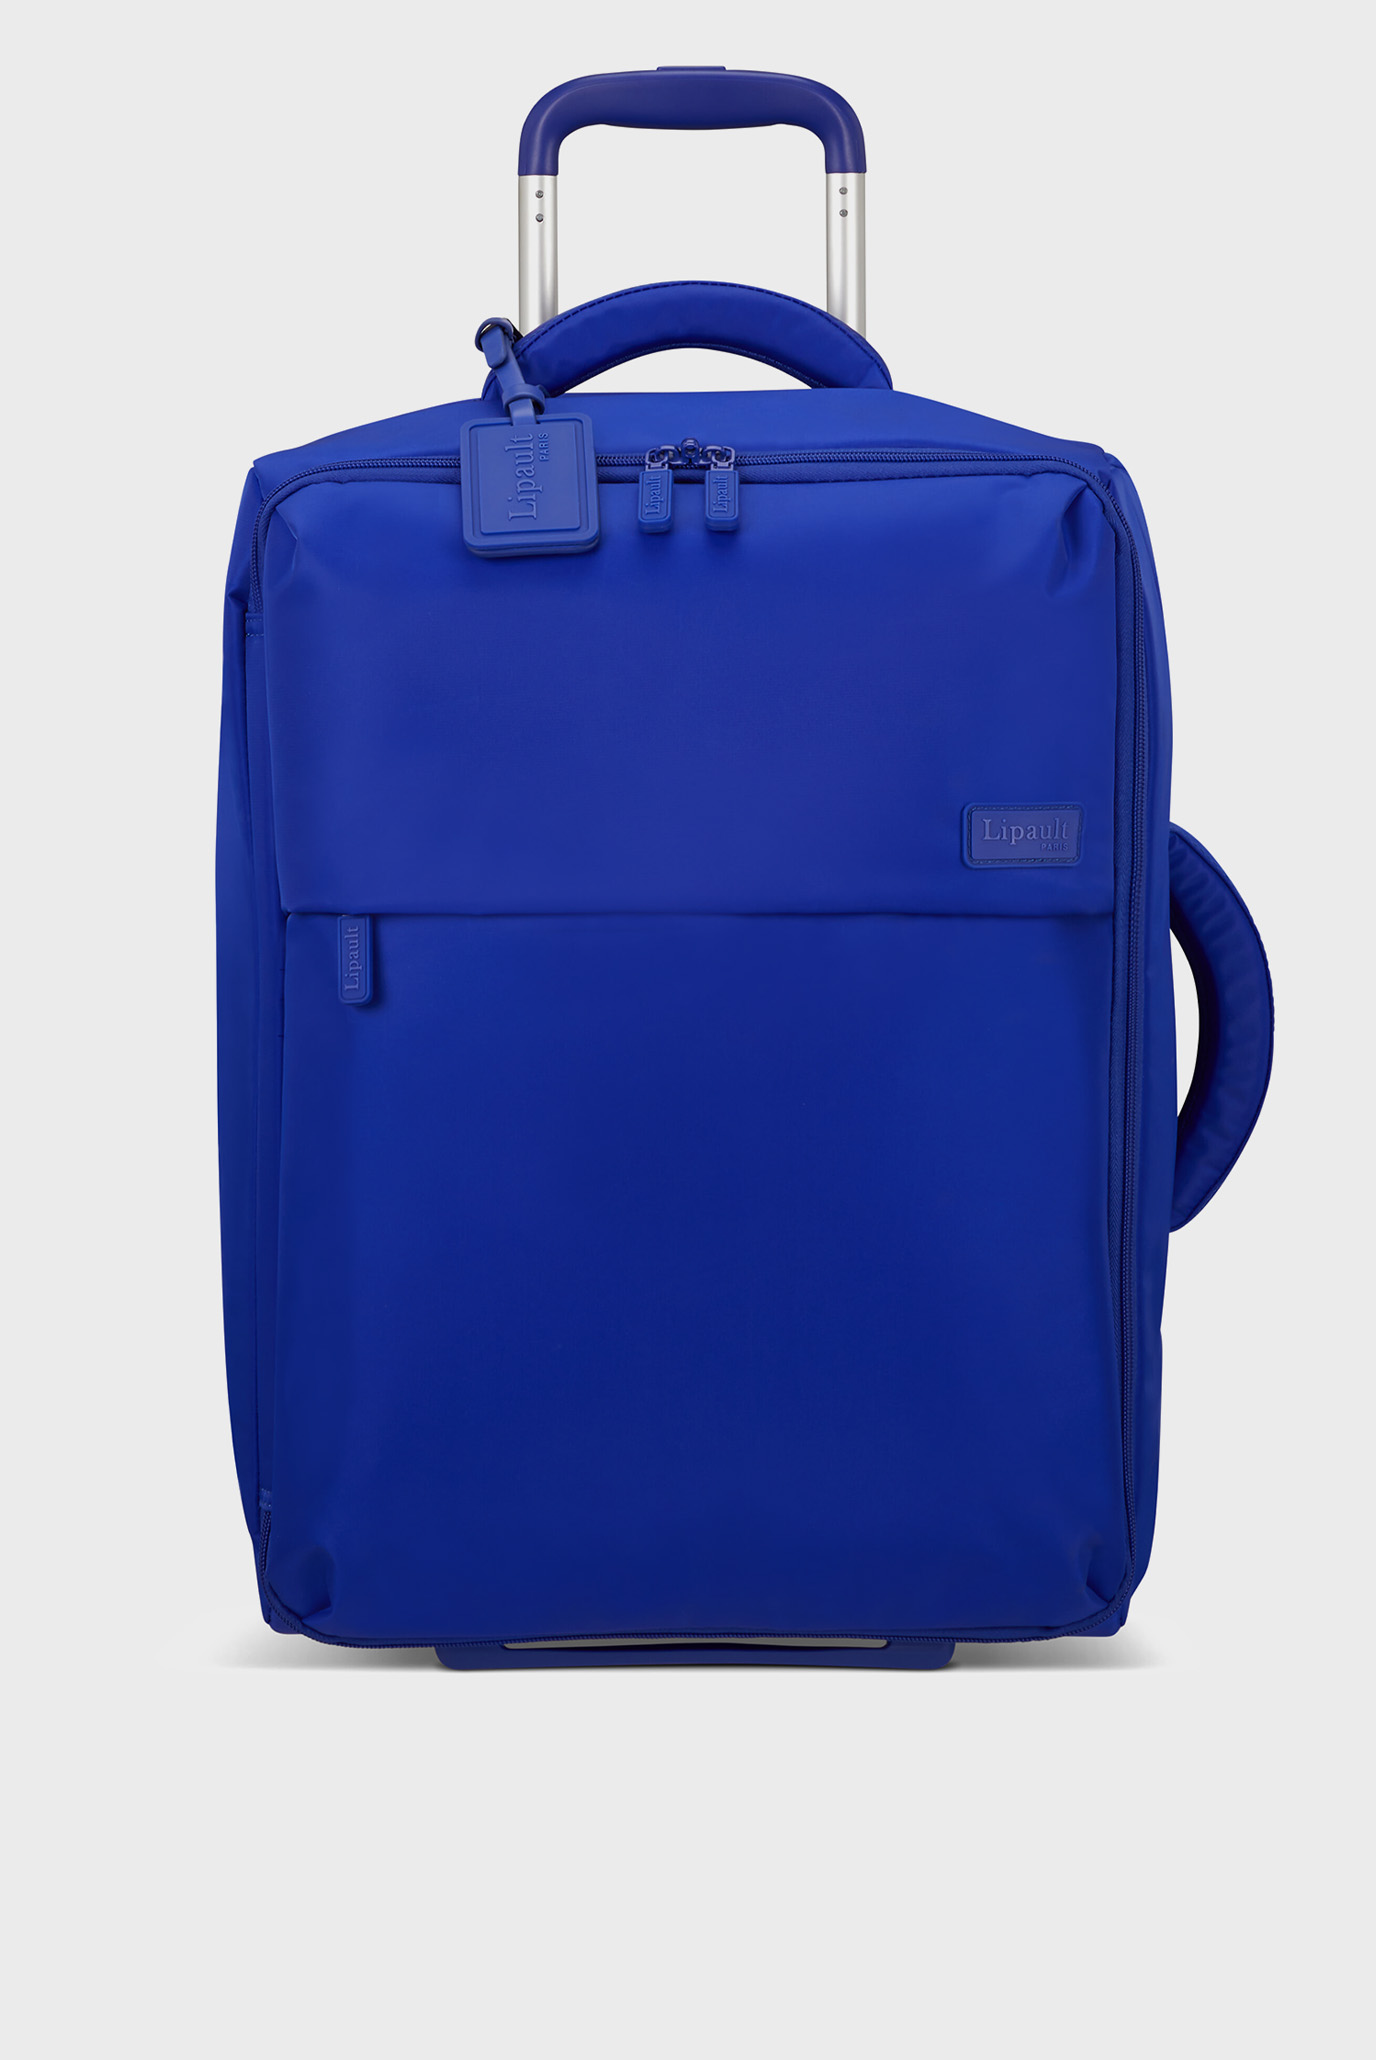 Женская синяя дорожная сумка на колесах 55 см FOLDABLE PLUME 1